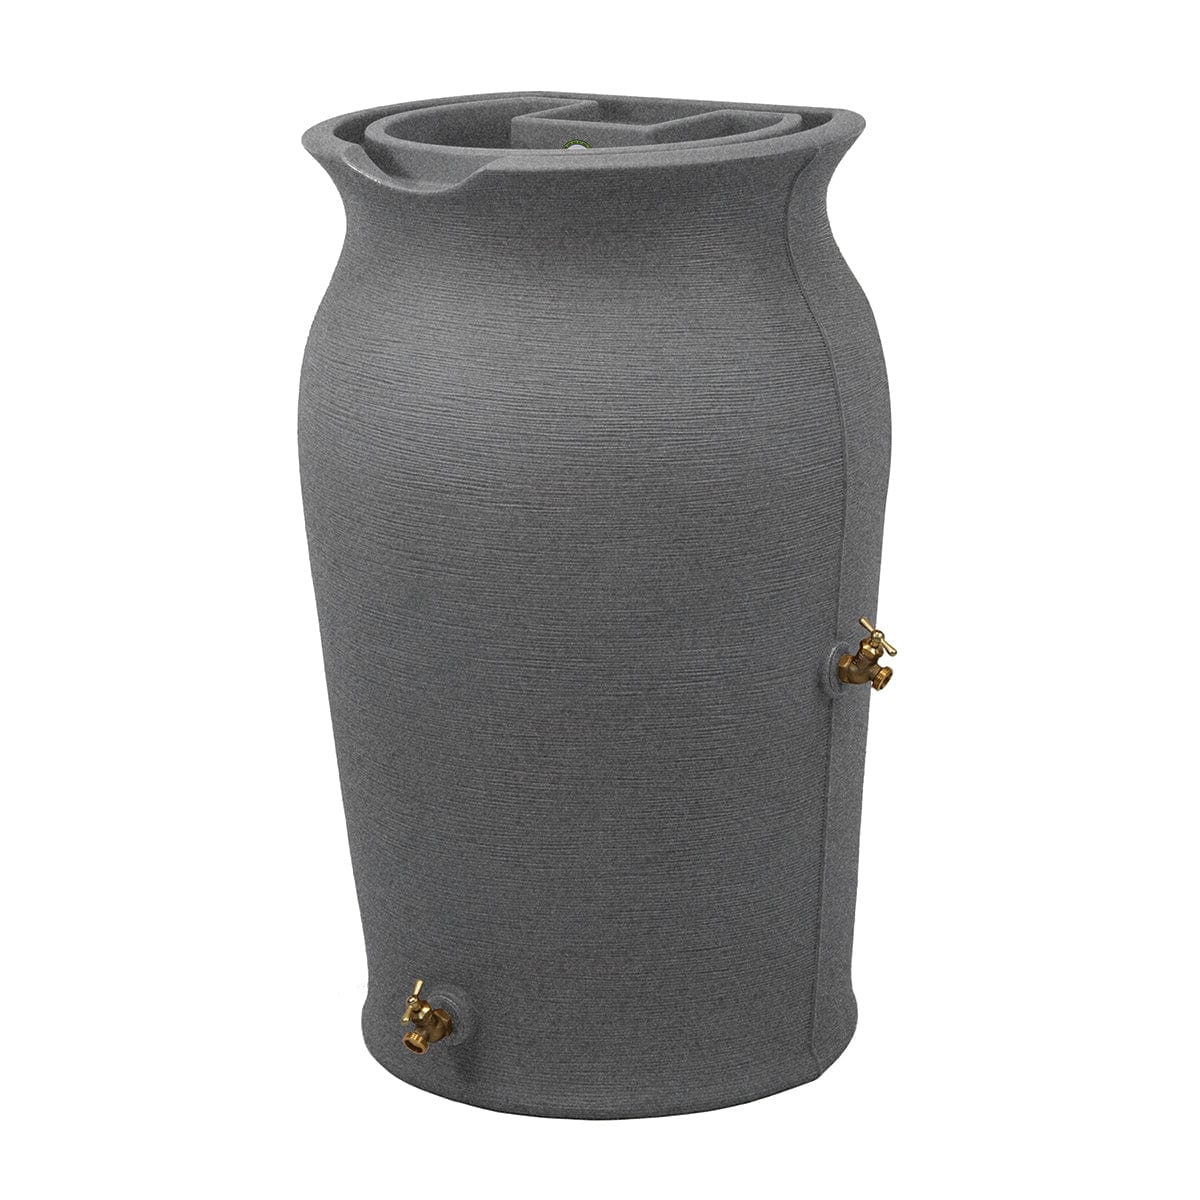 Impressions Amphora 50 Gallon Rain Barrel